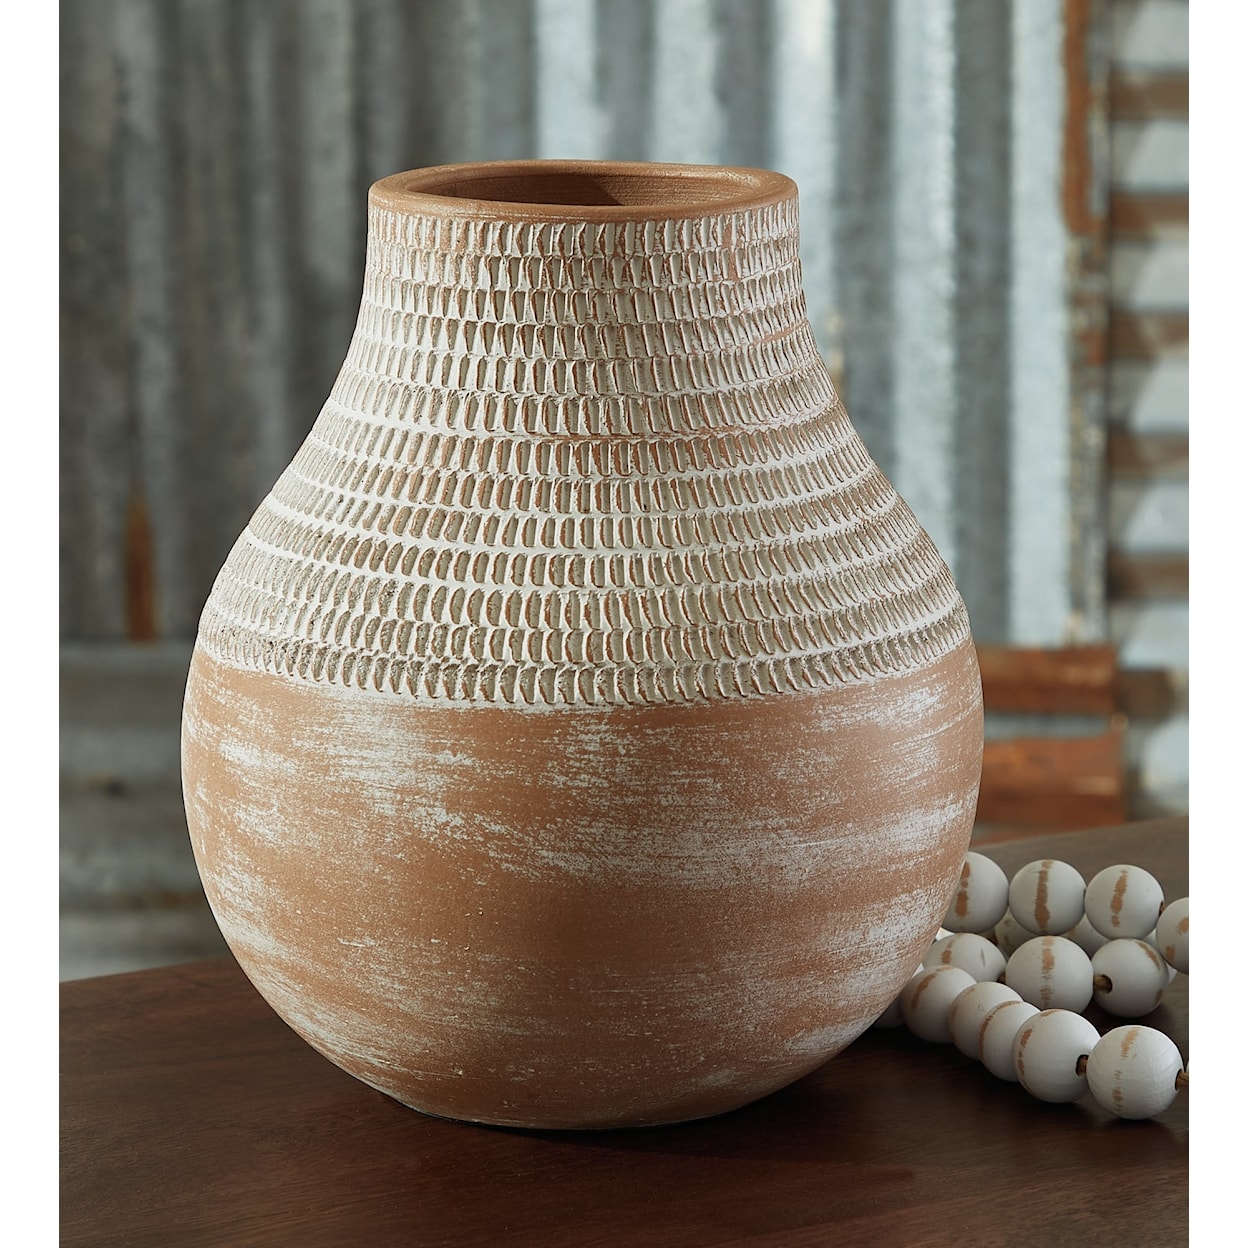 Signature Design Reclove Vase